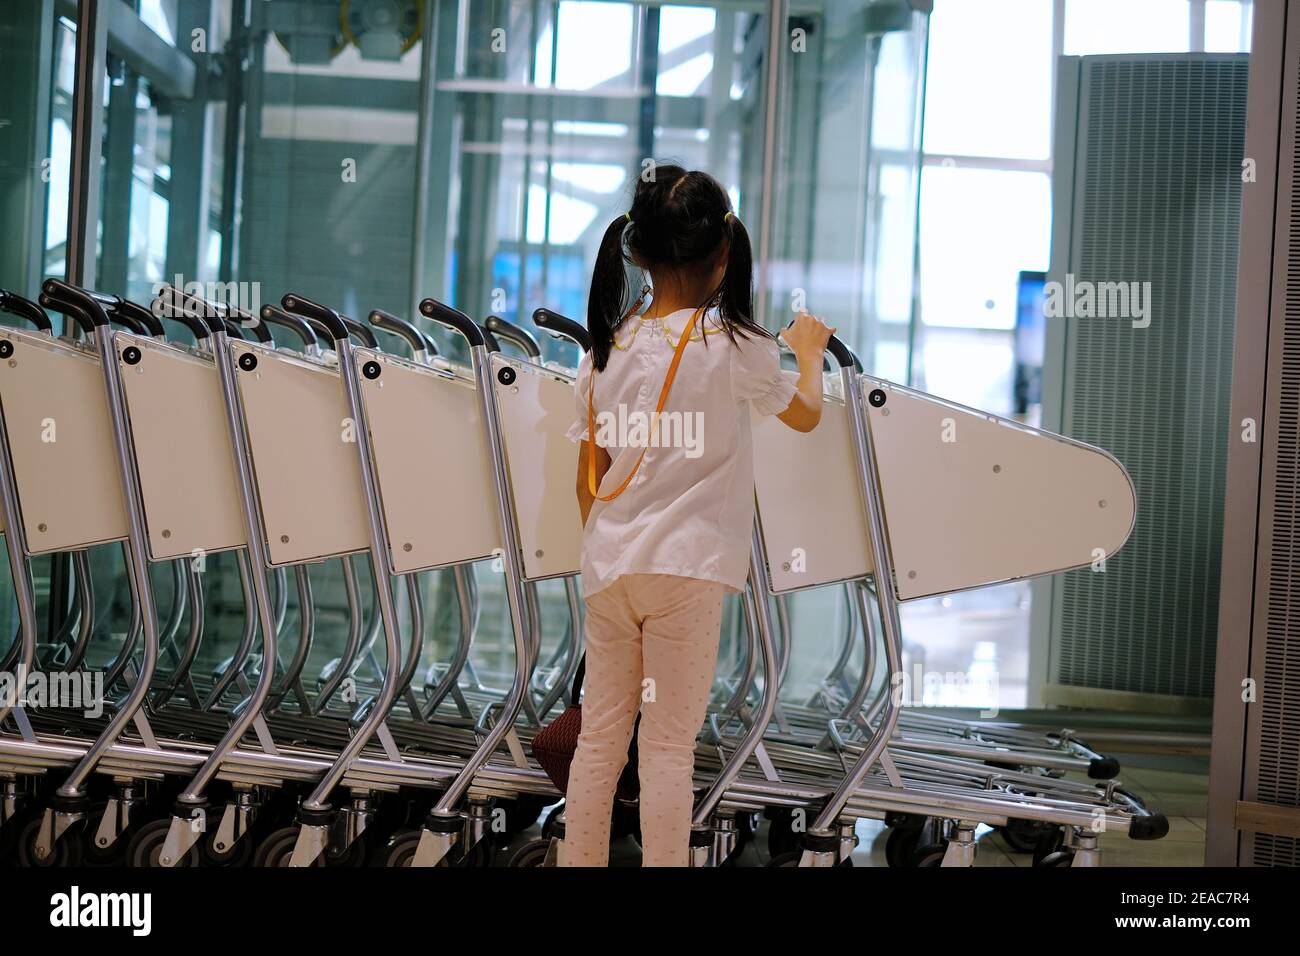 La vue arrière d'une jolie jeune fille asiatique poussant un chariot à un terminal de l'aéroport pour transporter ses bagages à sa porte avant son vol. Banque D'Images